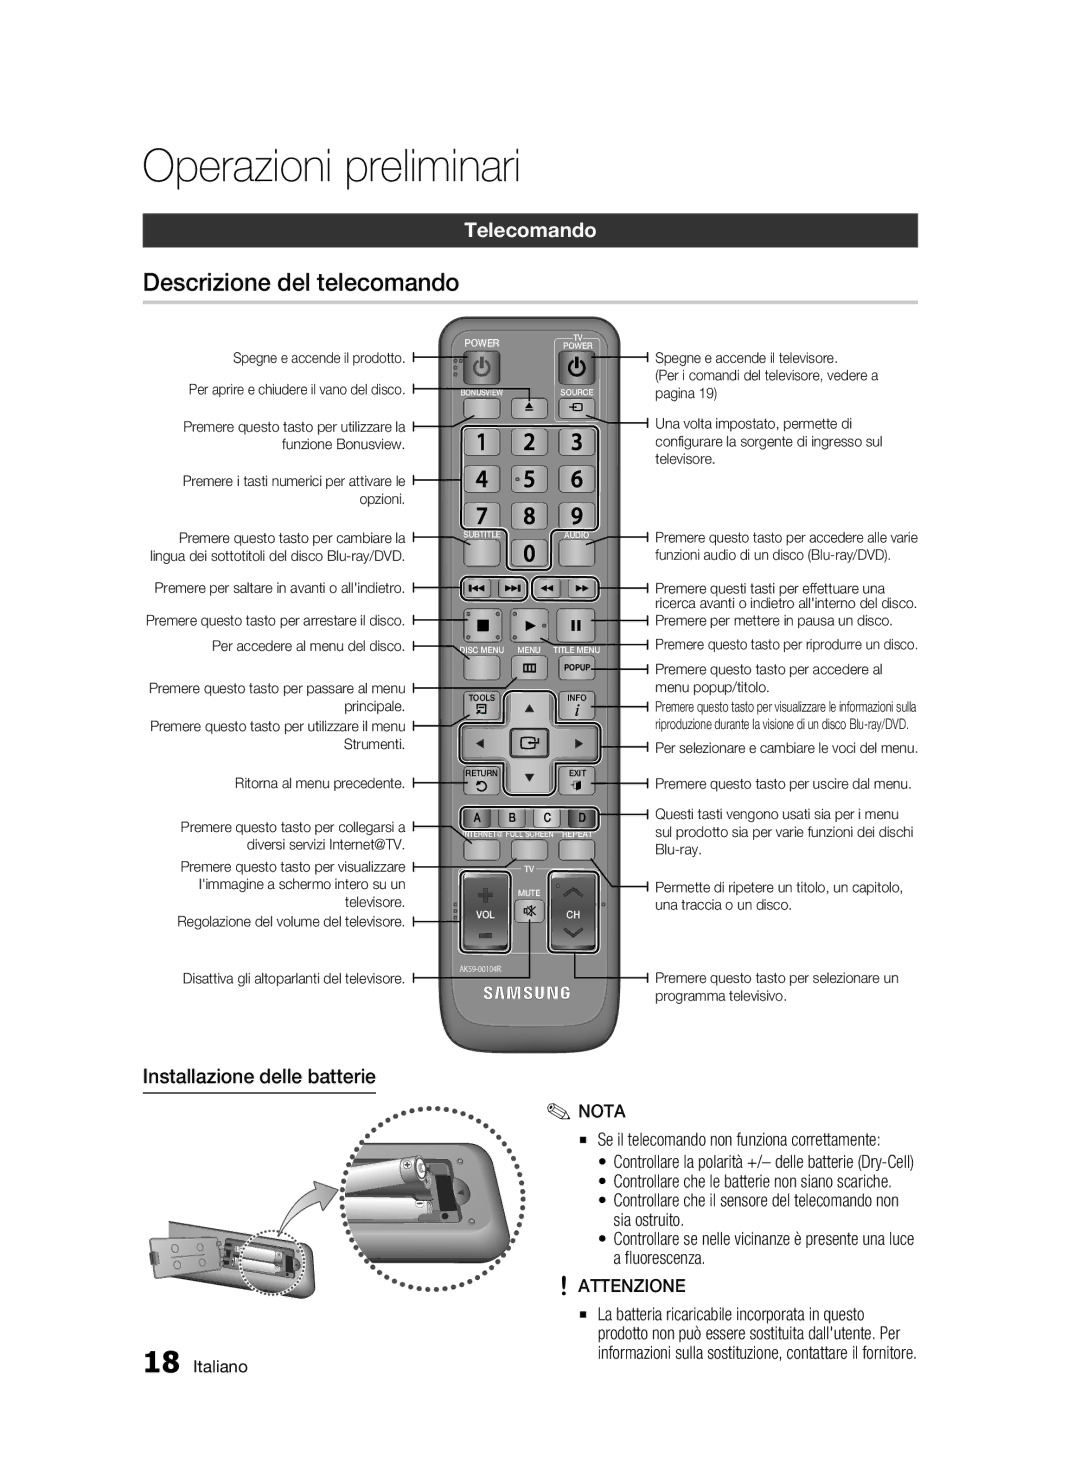 Samsung BD-C7500/EDC, BD-C7500/XEF manual Descrizione del telecomando, Telecomando, Installazione delle batterie, Attenzione 